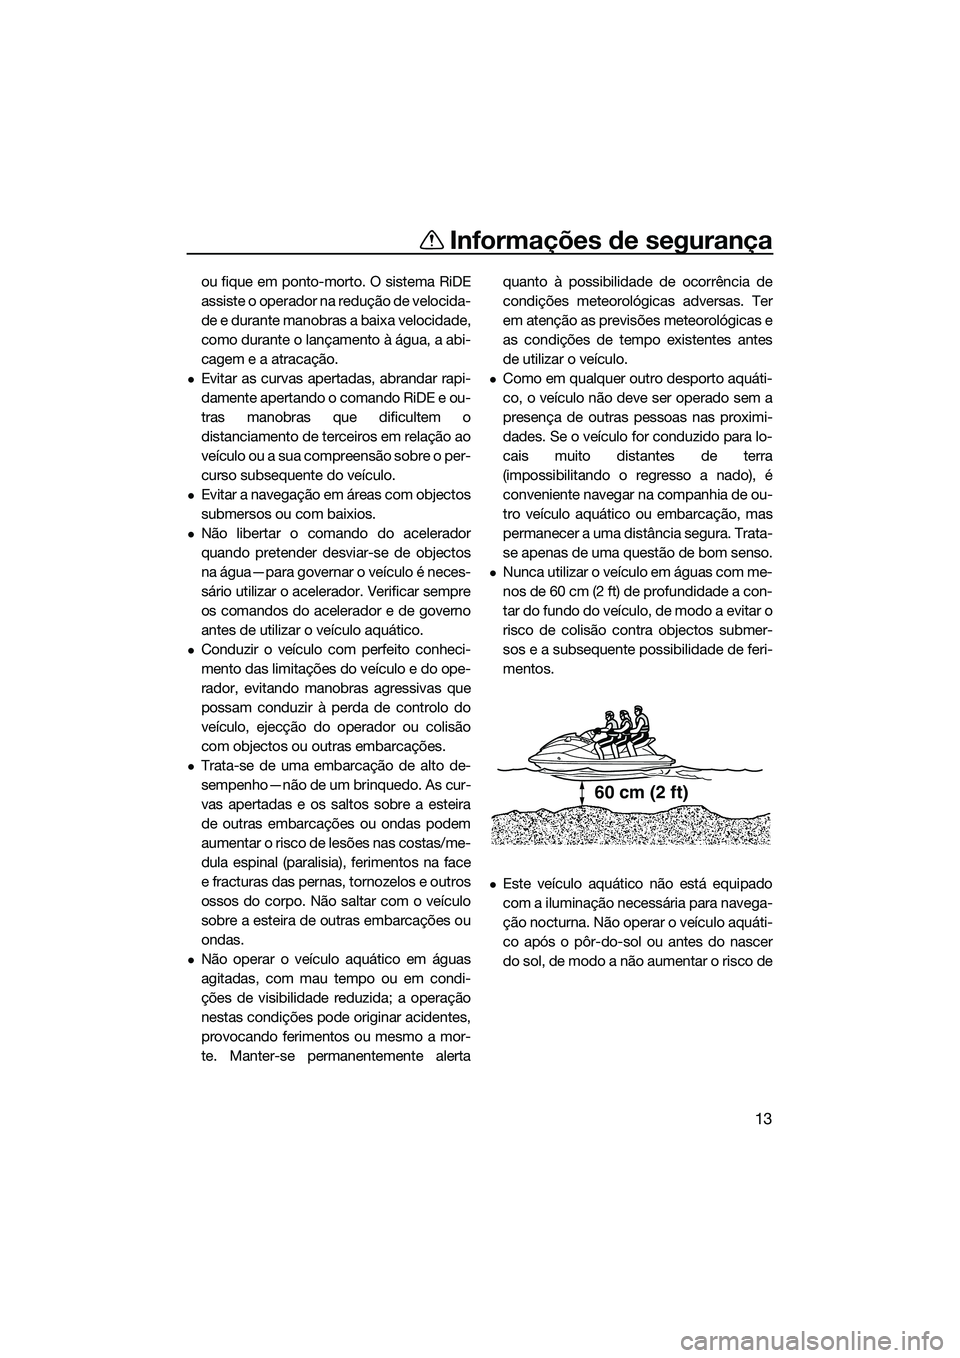 YAMAHA FX HO CRUISER 2015  Manual de utilização (in Portuguese) Informações de segurança
13
ou fique em ponto-morto. O sistema RiDE
assiste o operador na redução de velocida-
de e durante manobras a baixa velocidade,
como durante o lançamento à água, a abi